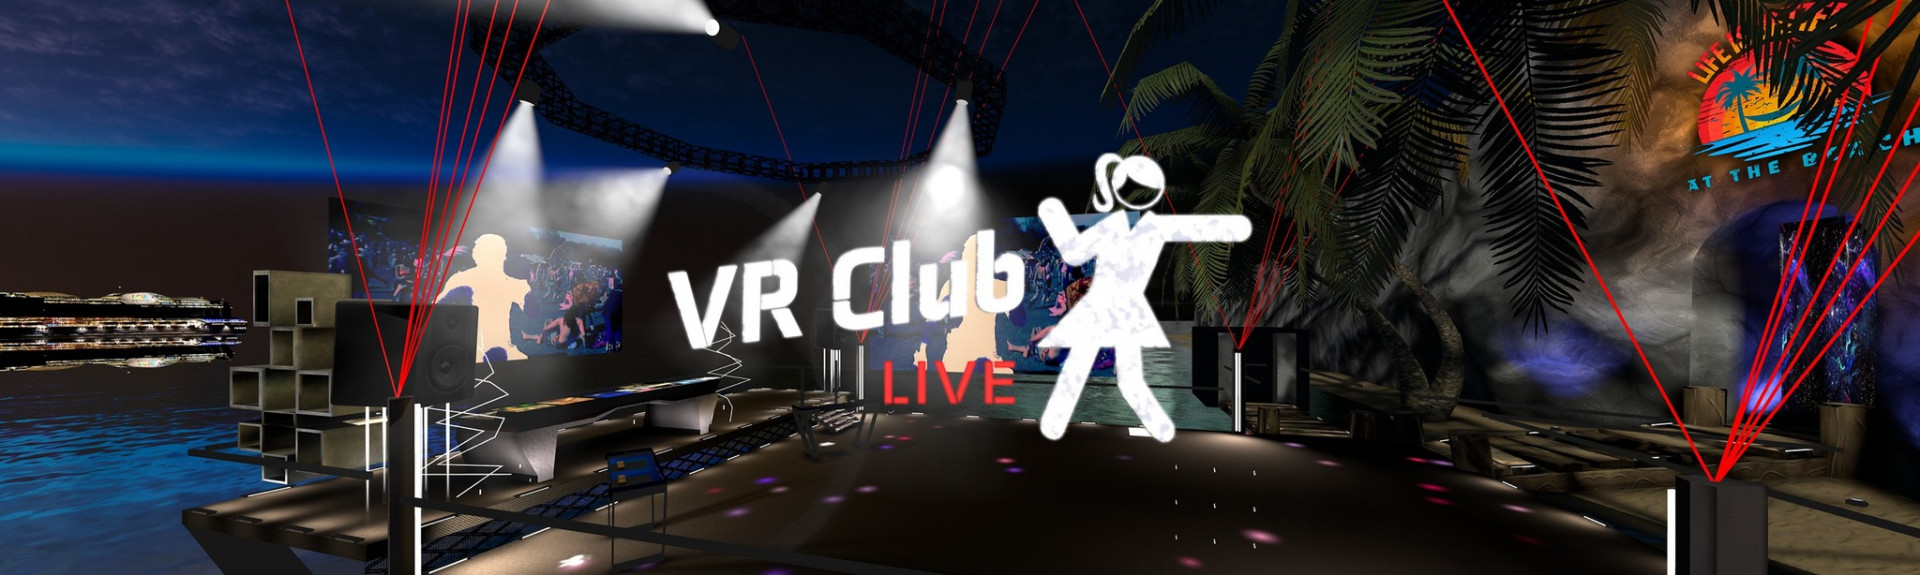 VR Club Live